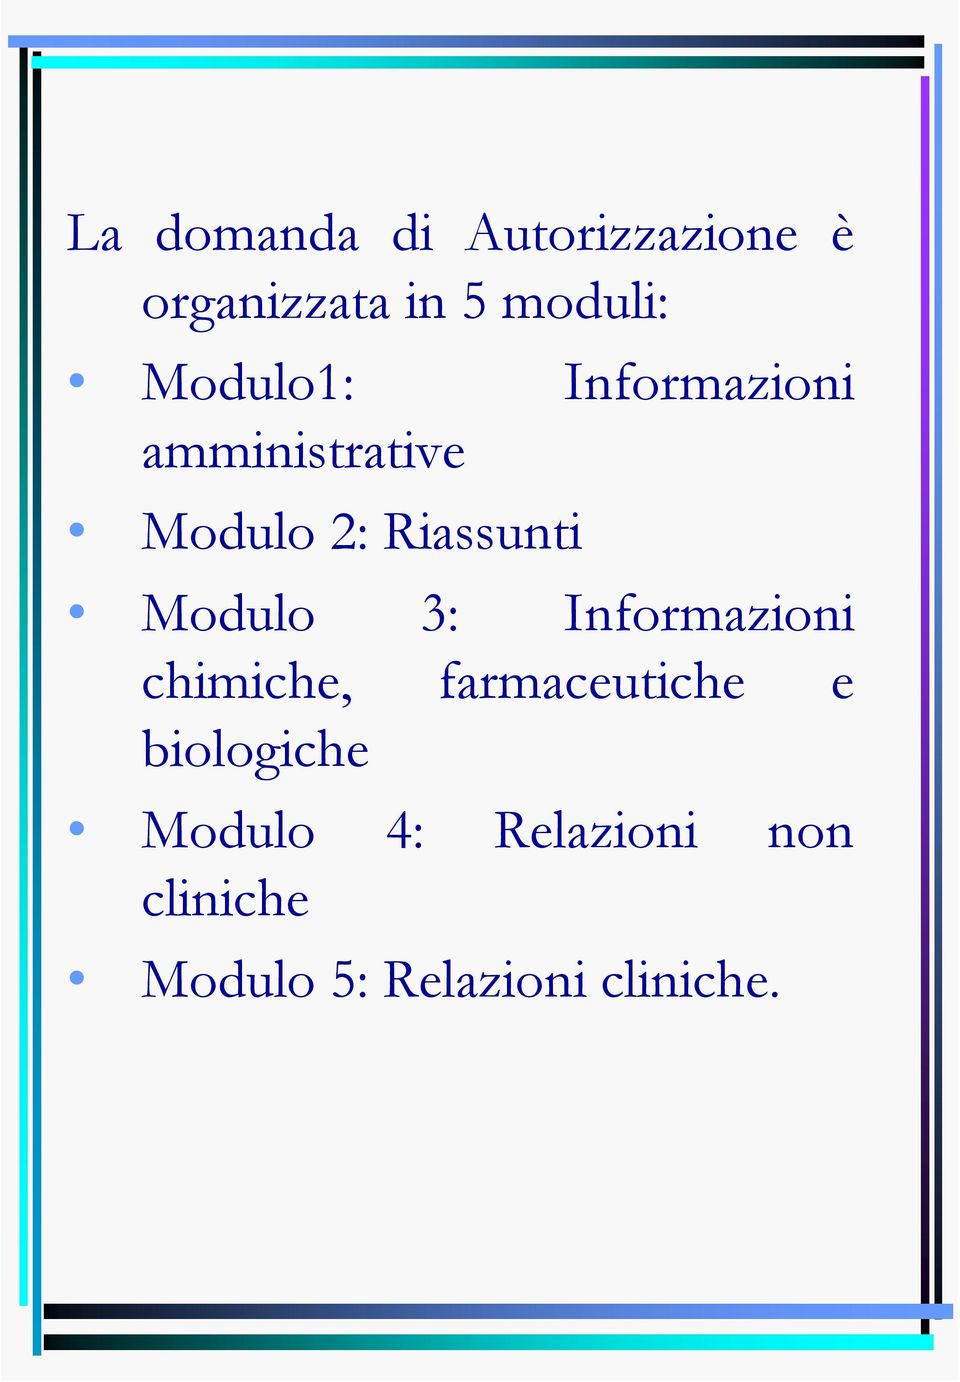 Modulo 3: Informazioni chimiche, farmaceutiche e